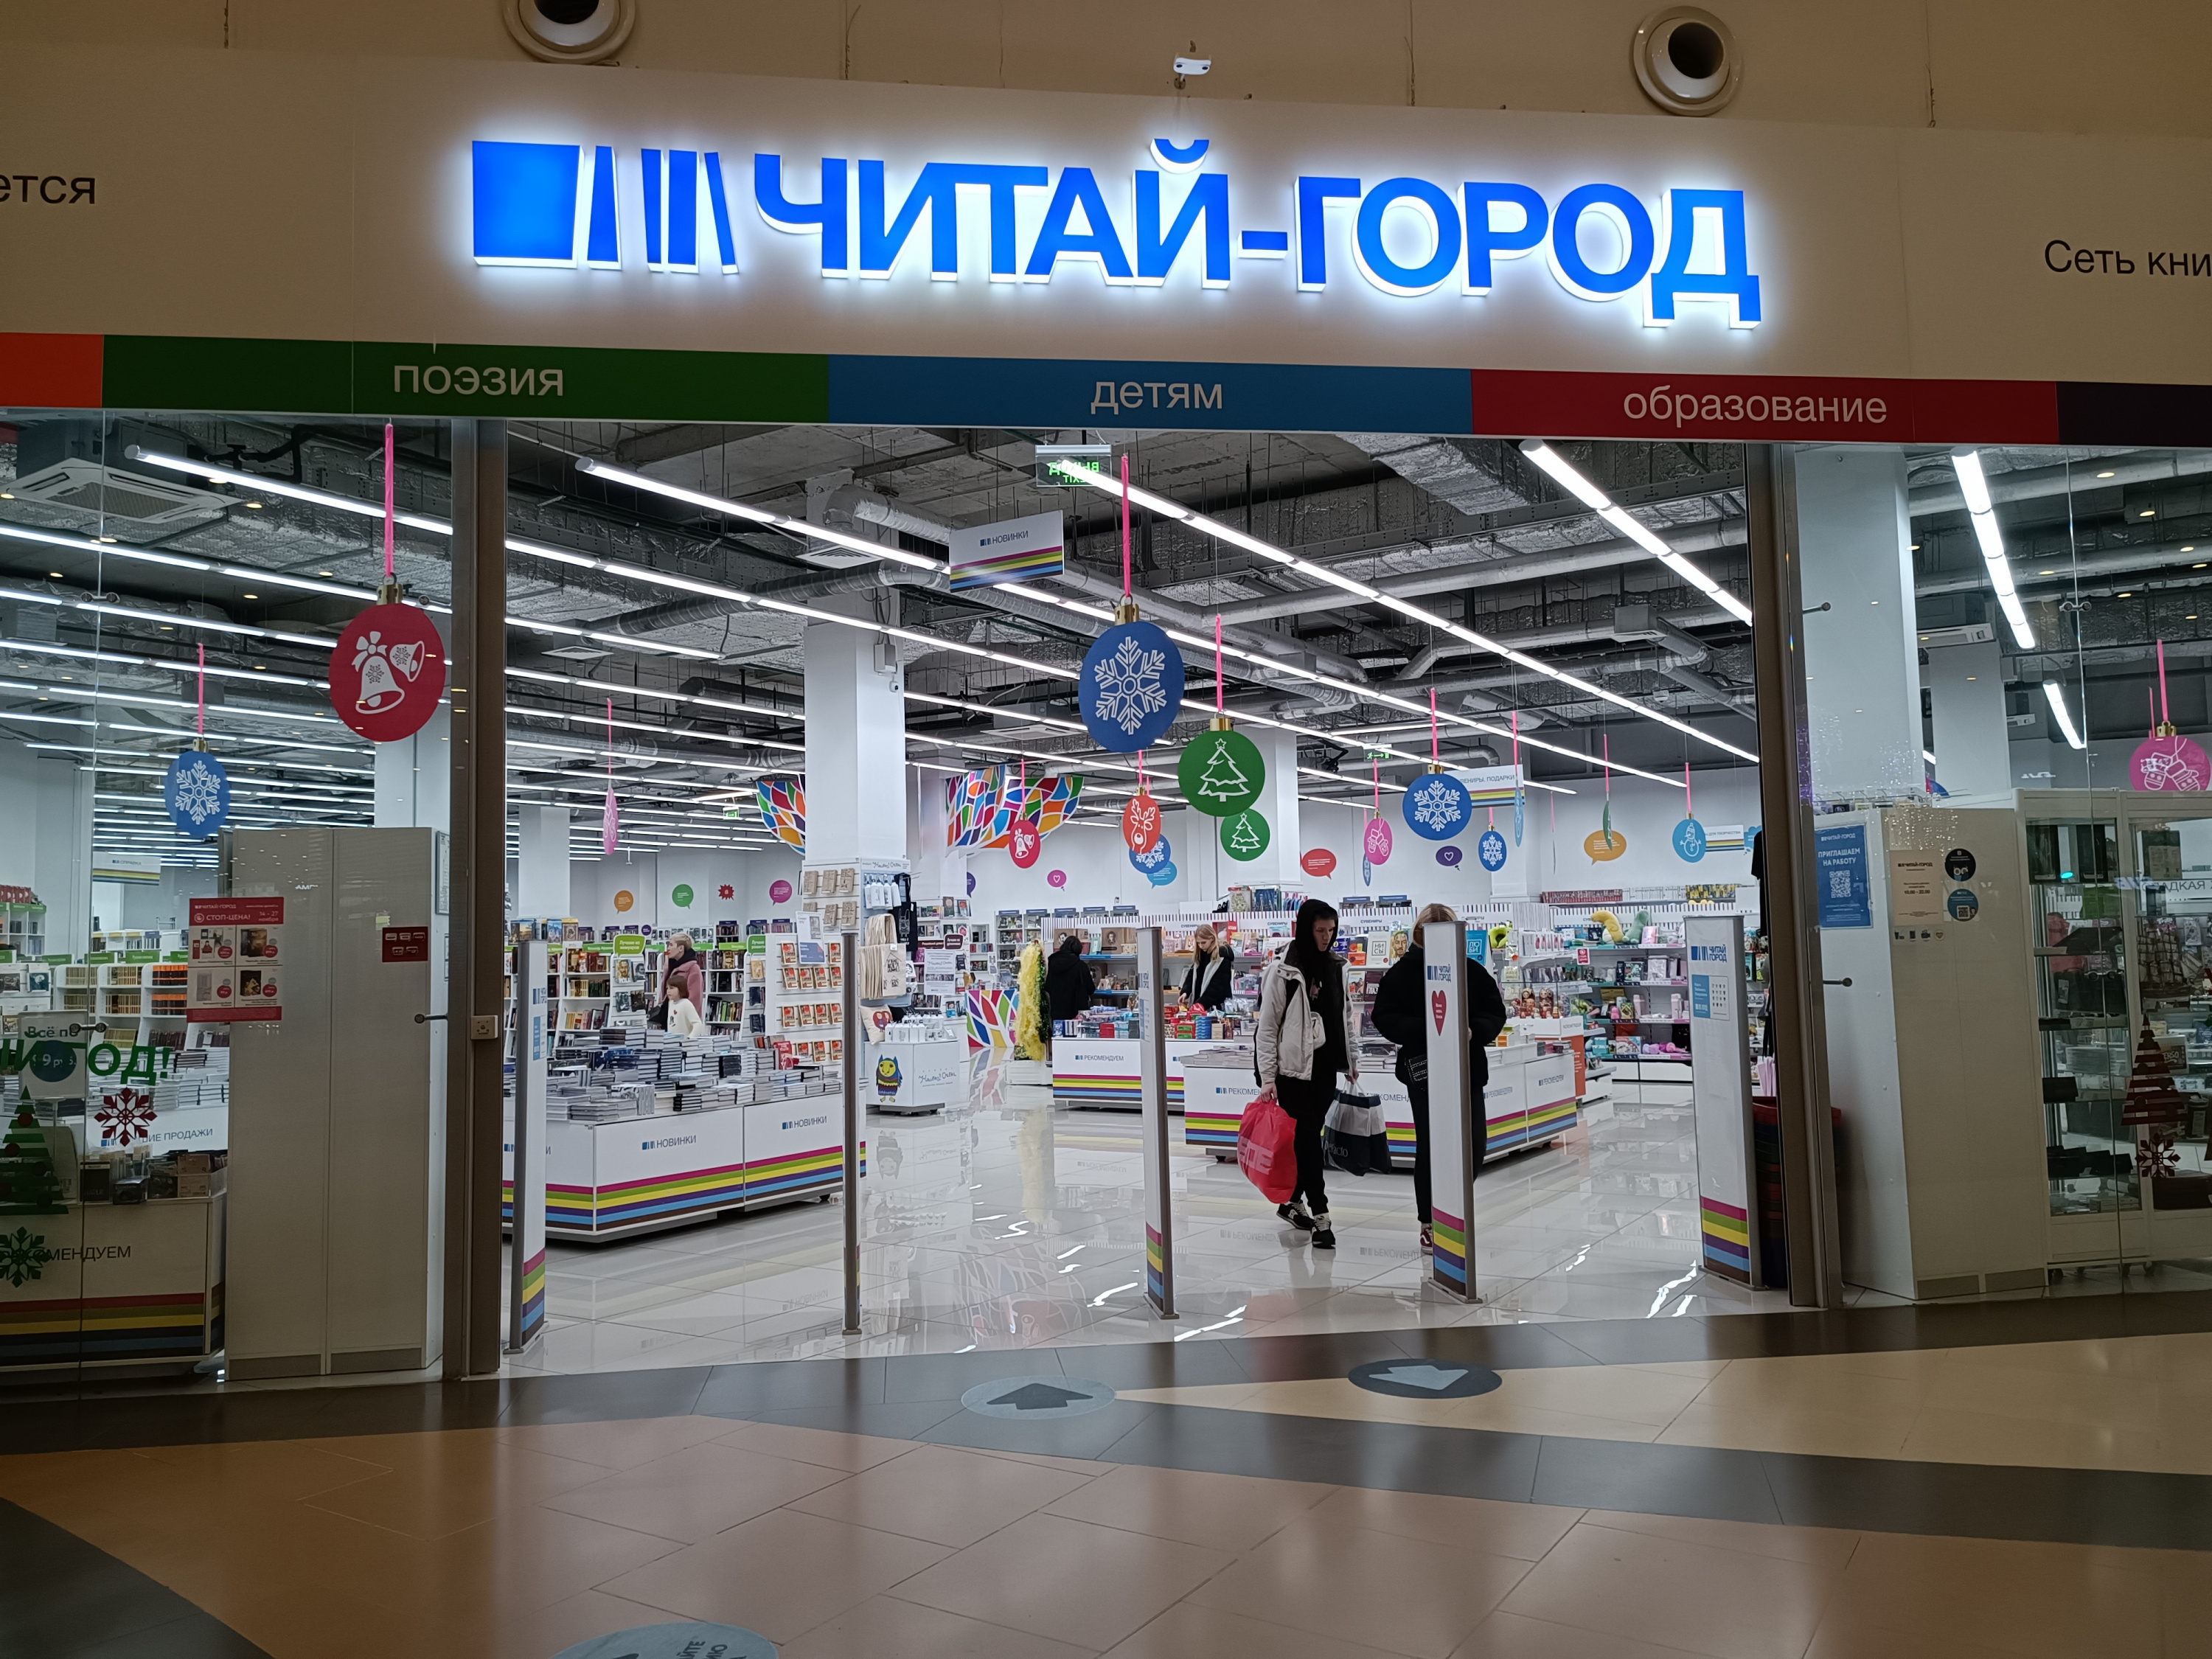 Фото: Ольга Крыкова/Retail.ru